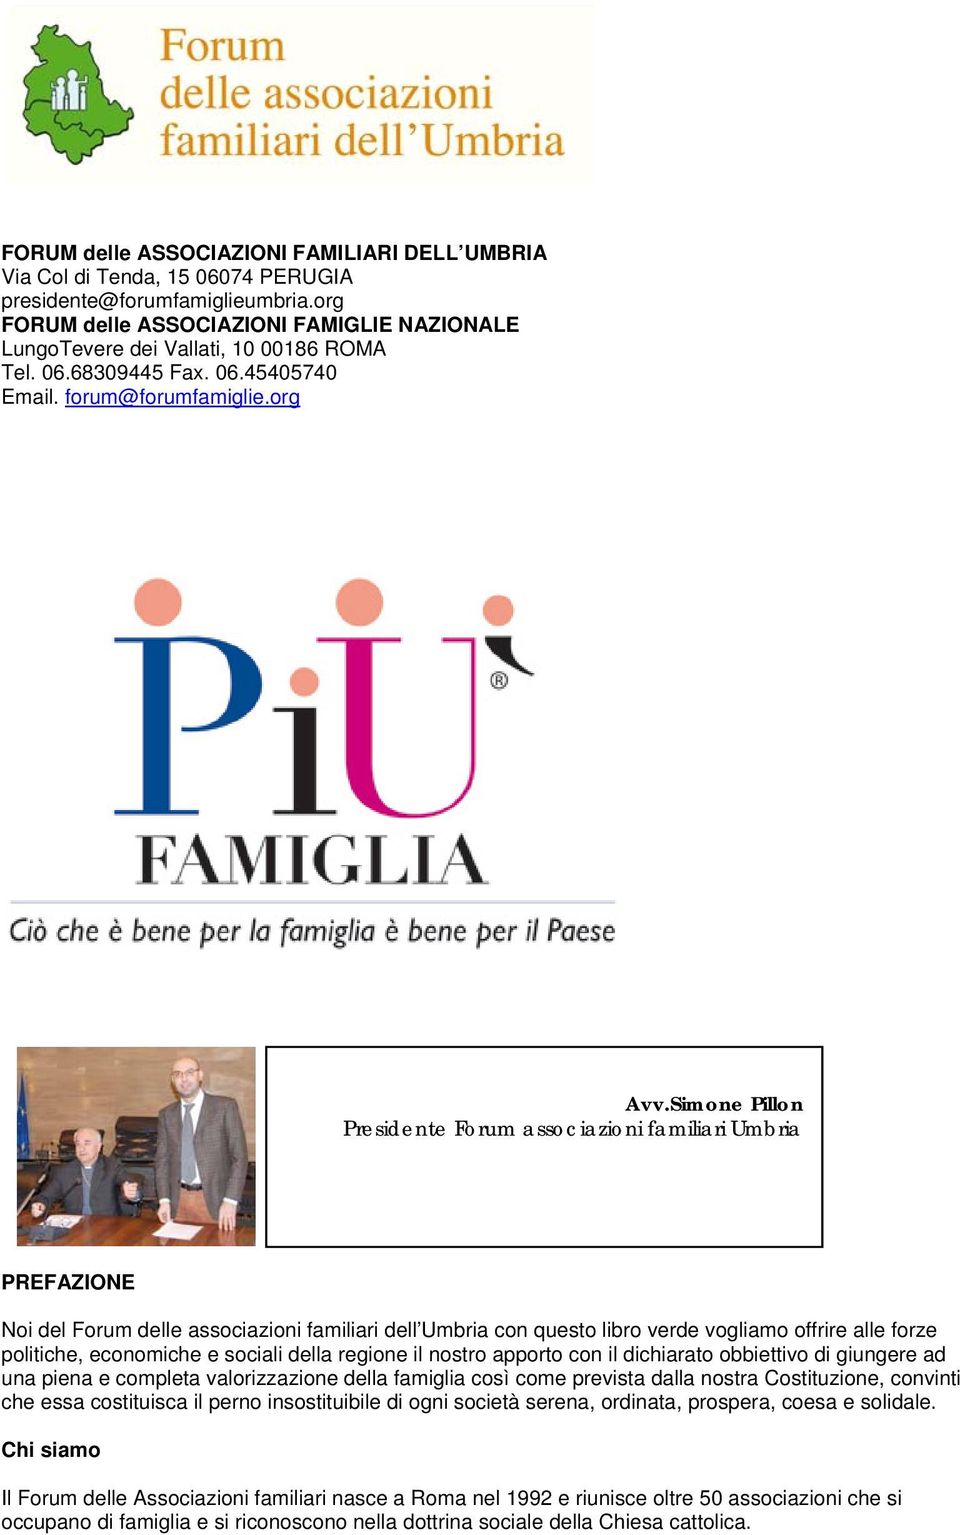 Simone Pillon Presidente Forum associazioni familiari Umbria PREFAZIONE Noi del Forum delle associazioni familiari dell Umbria con questo libro verde vogliamo offrire alle forze politiche, economiche